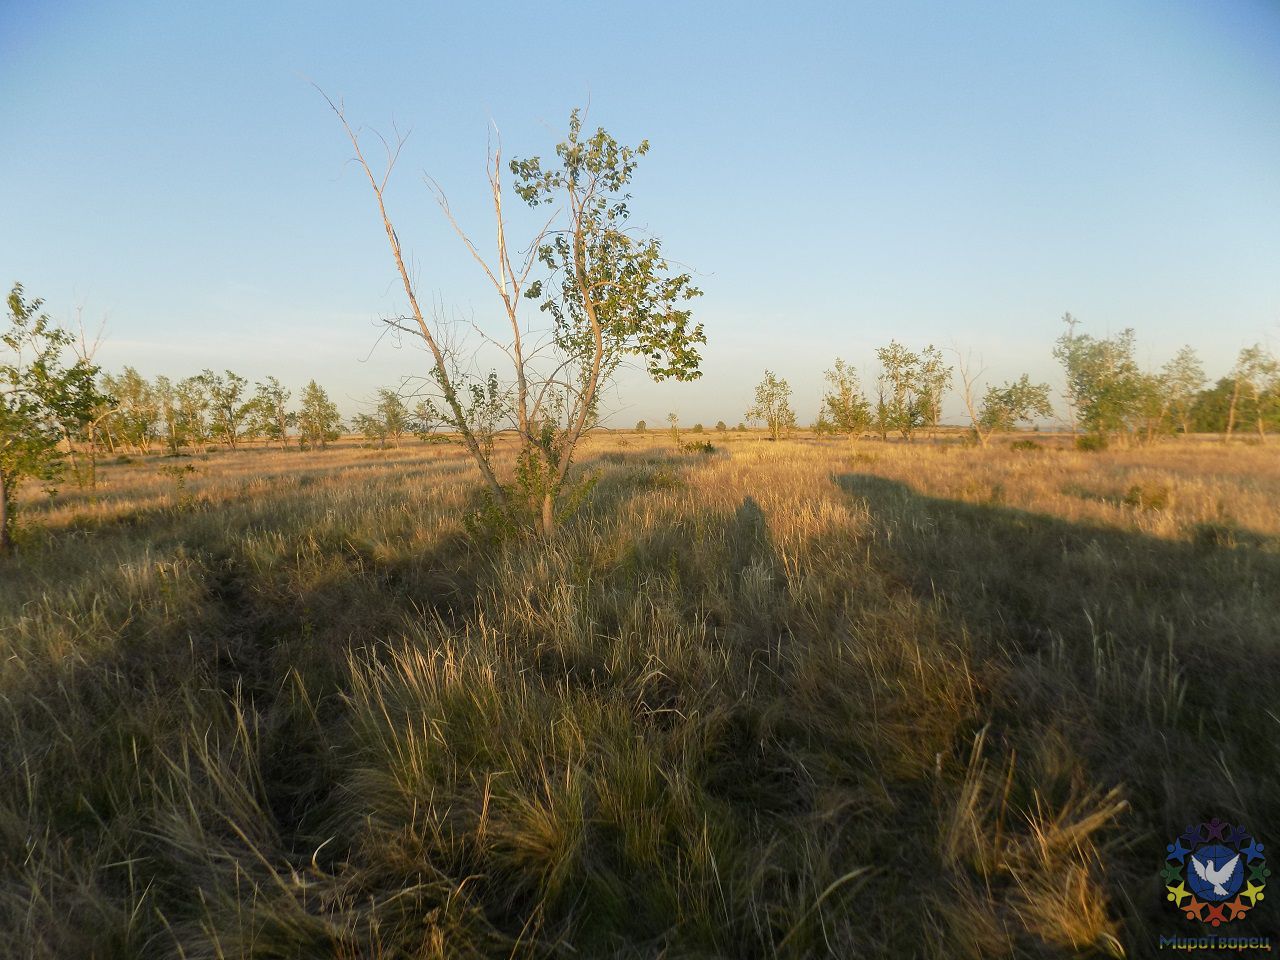 Линии отличаются цветом травы и направлением роста  - Майский вояж «Екатеринбург - Башкирия - Казахстан - Аркаим»